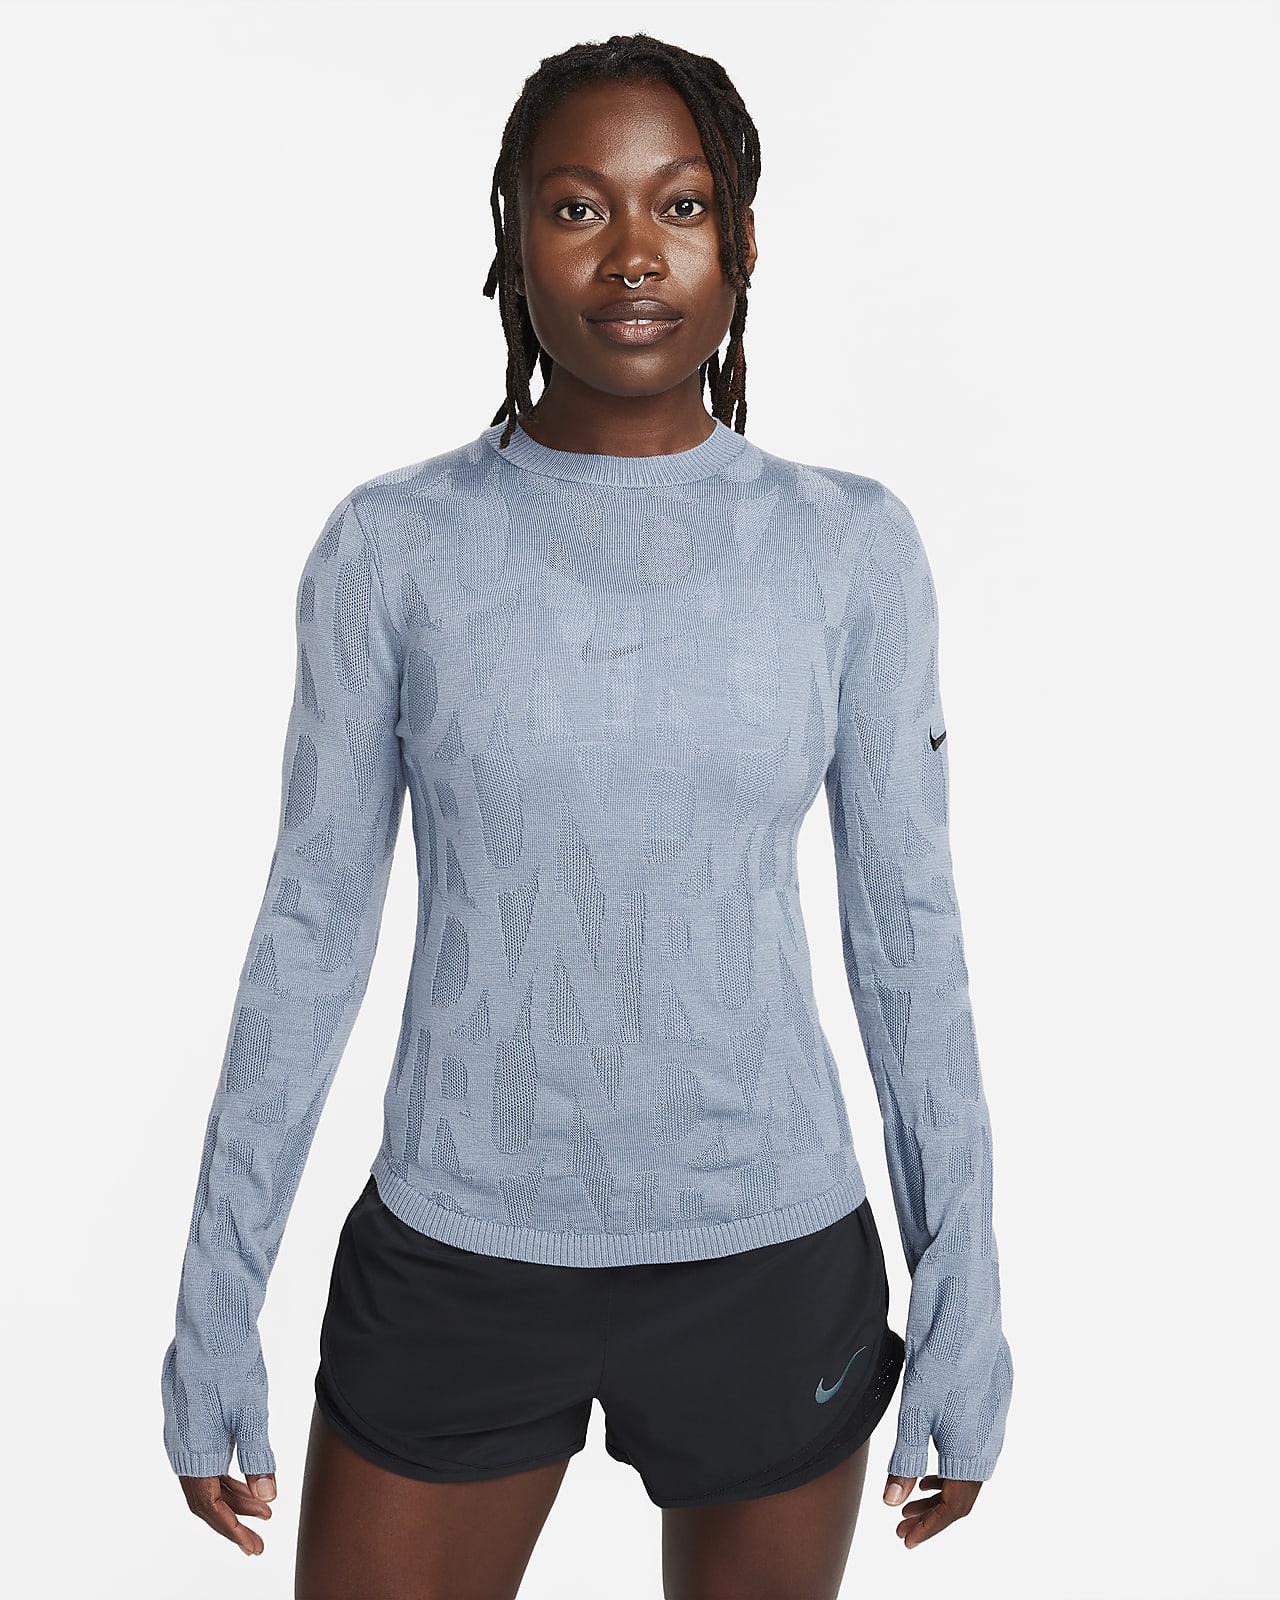 Mellanlagertröja Nike Running Division för kvinnor